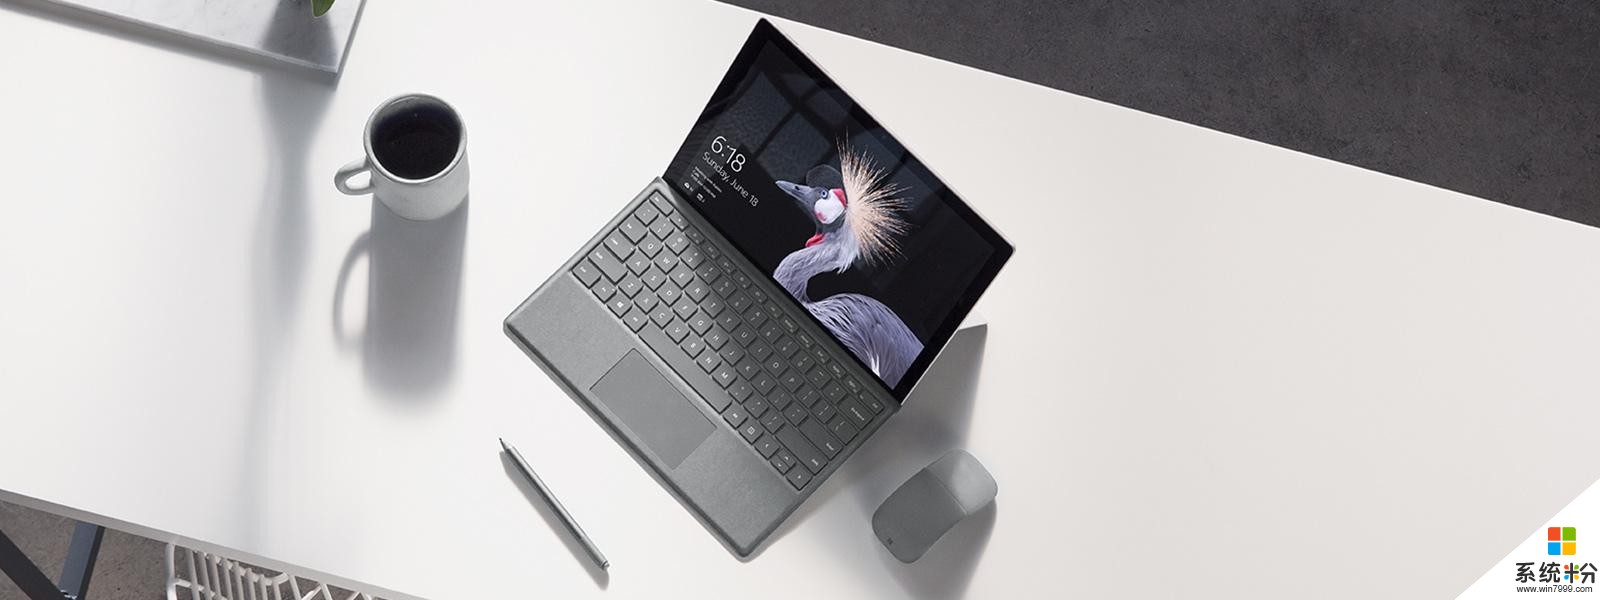 微软发布全新Surface Pro: 入门版仅5888元 配4096级别压感笔(3)